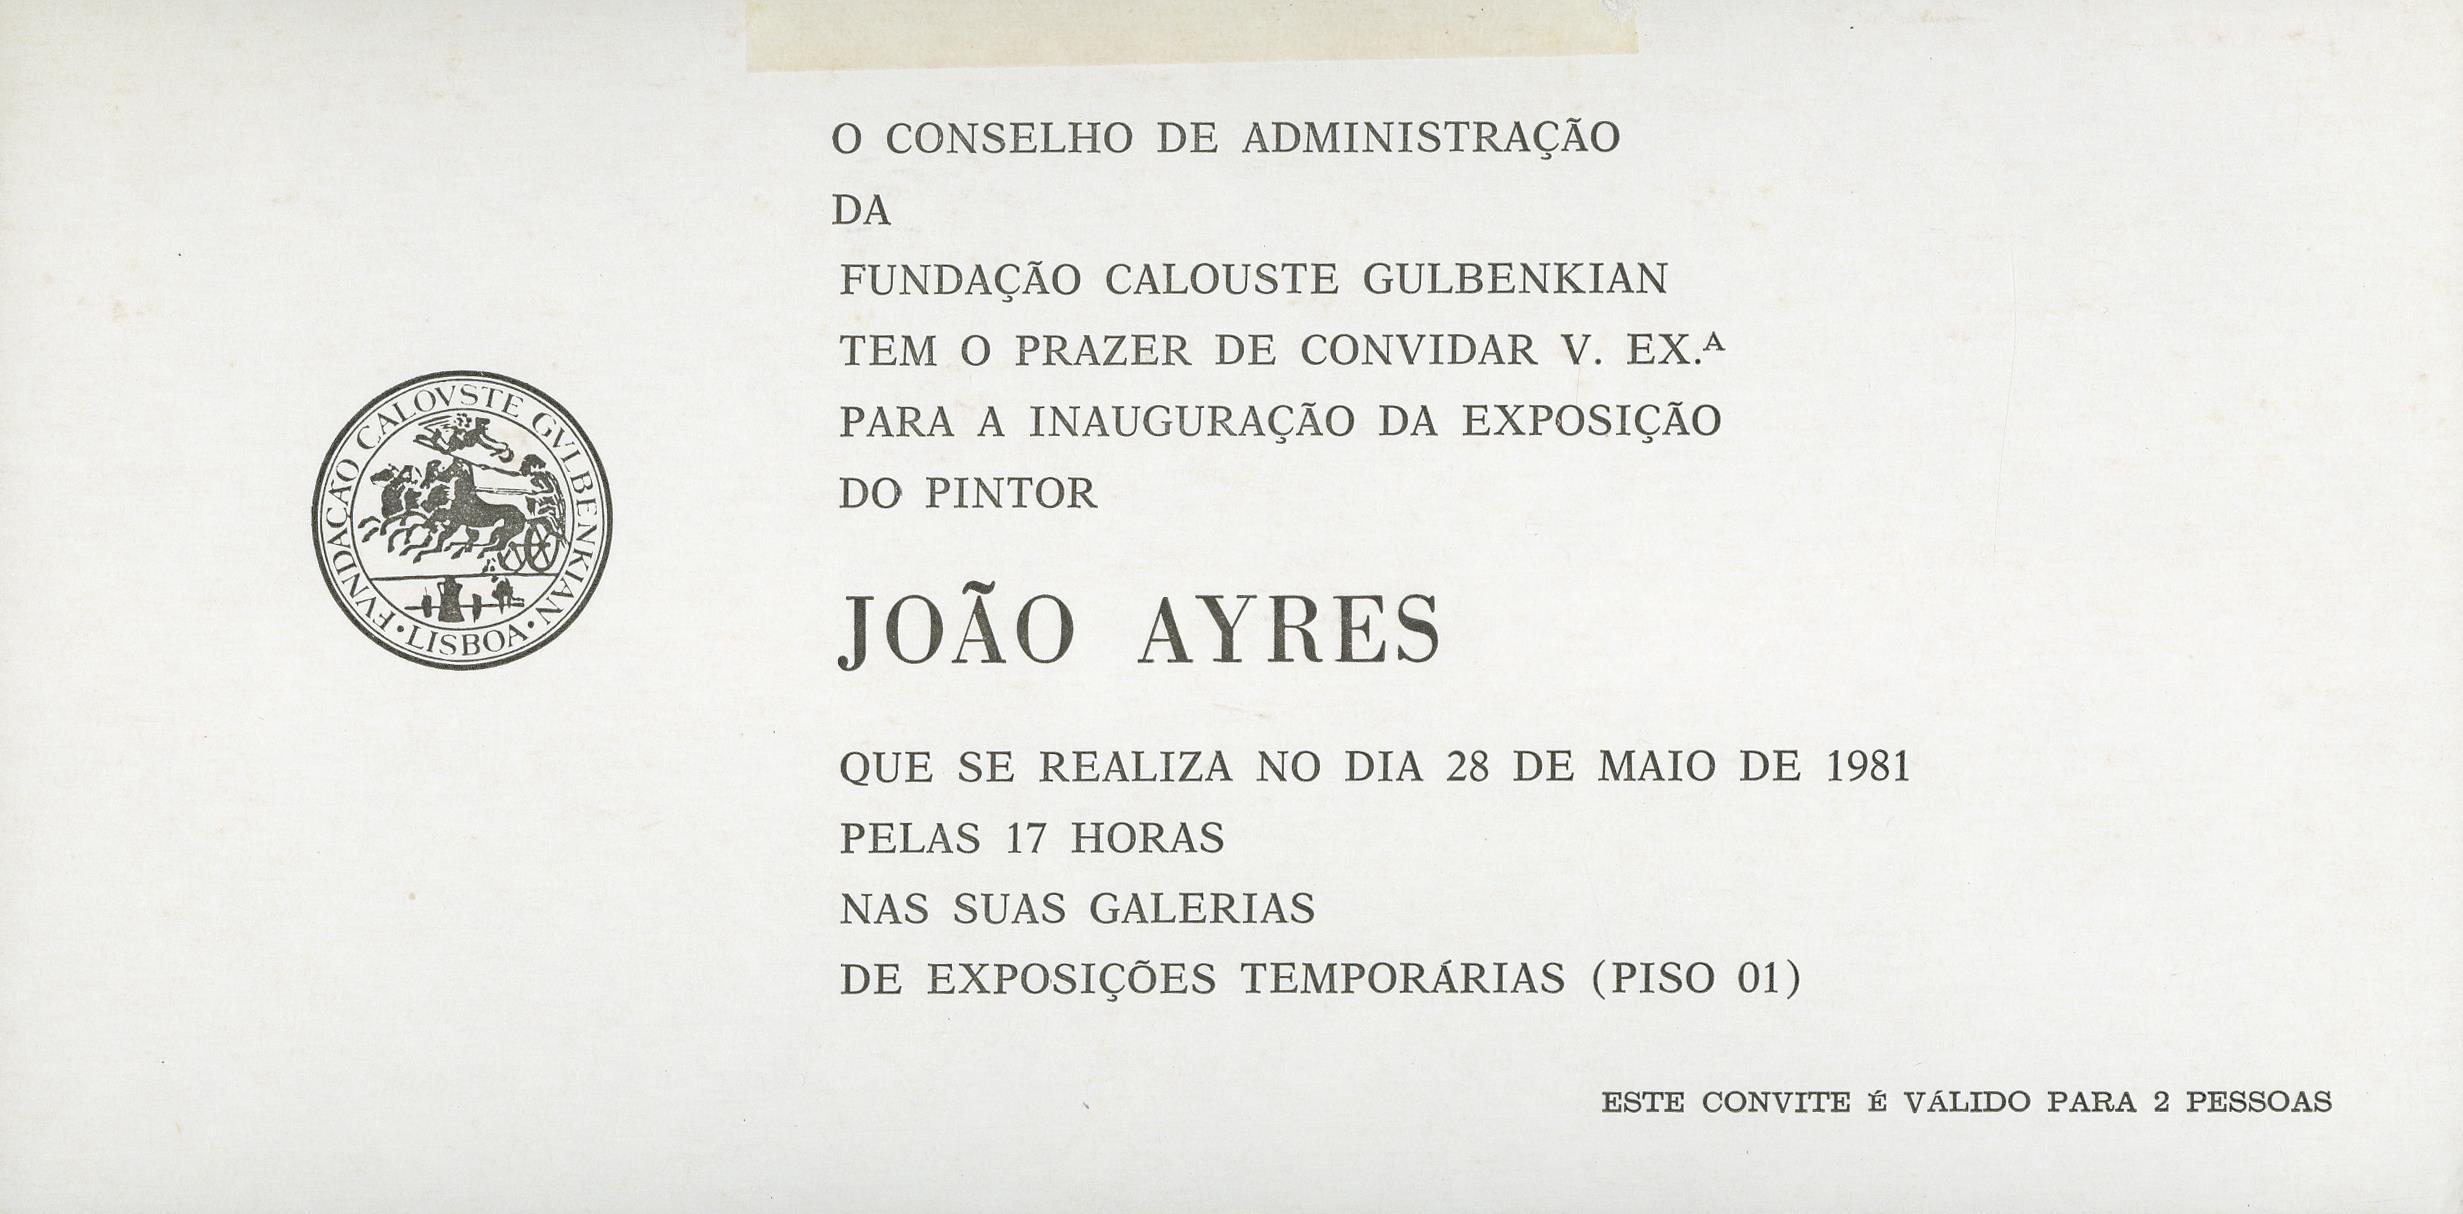 João Ayres